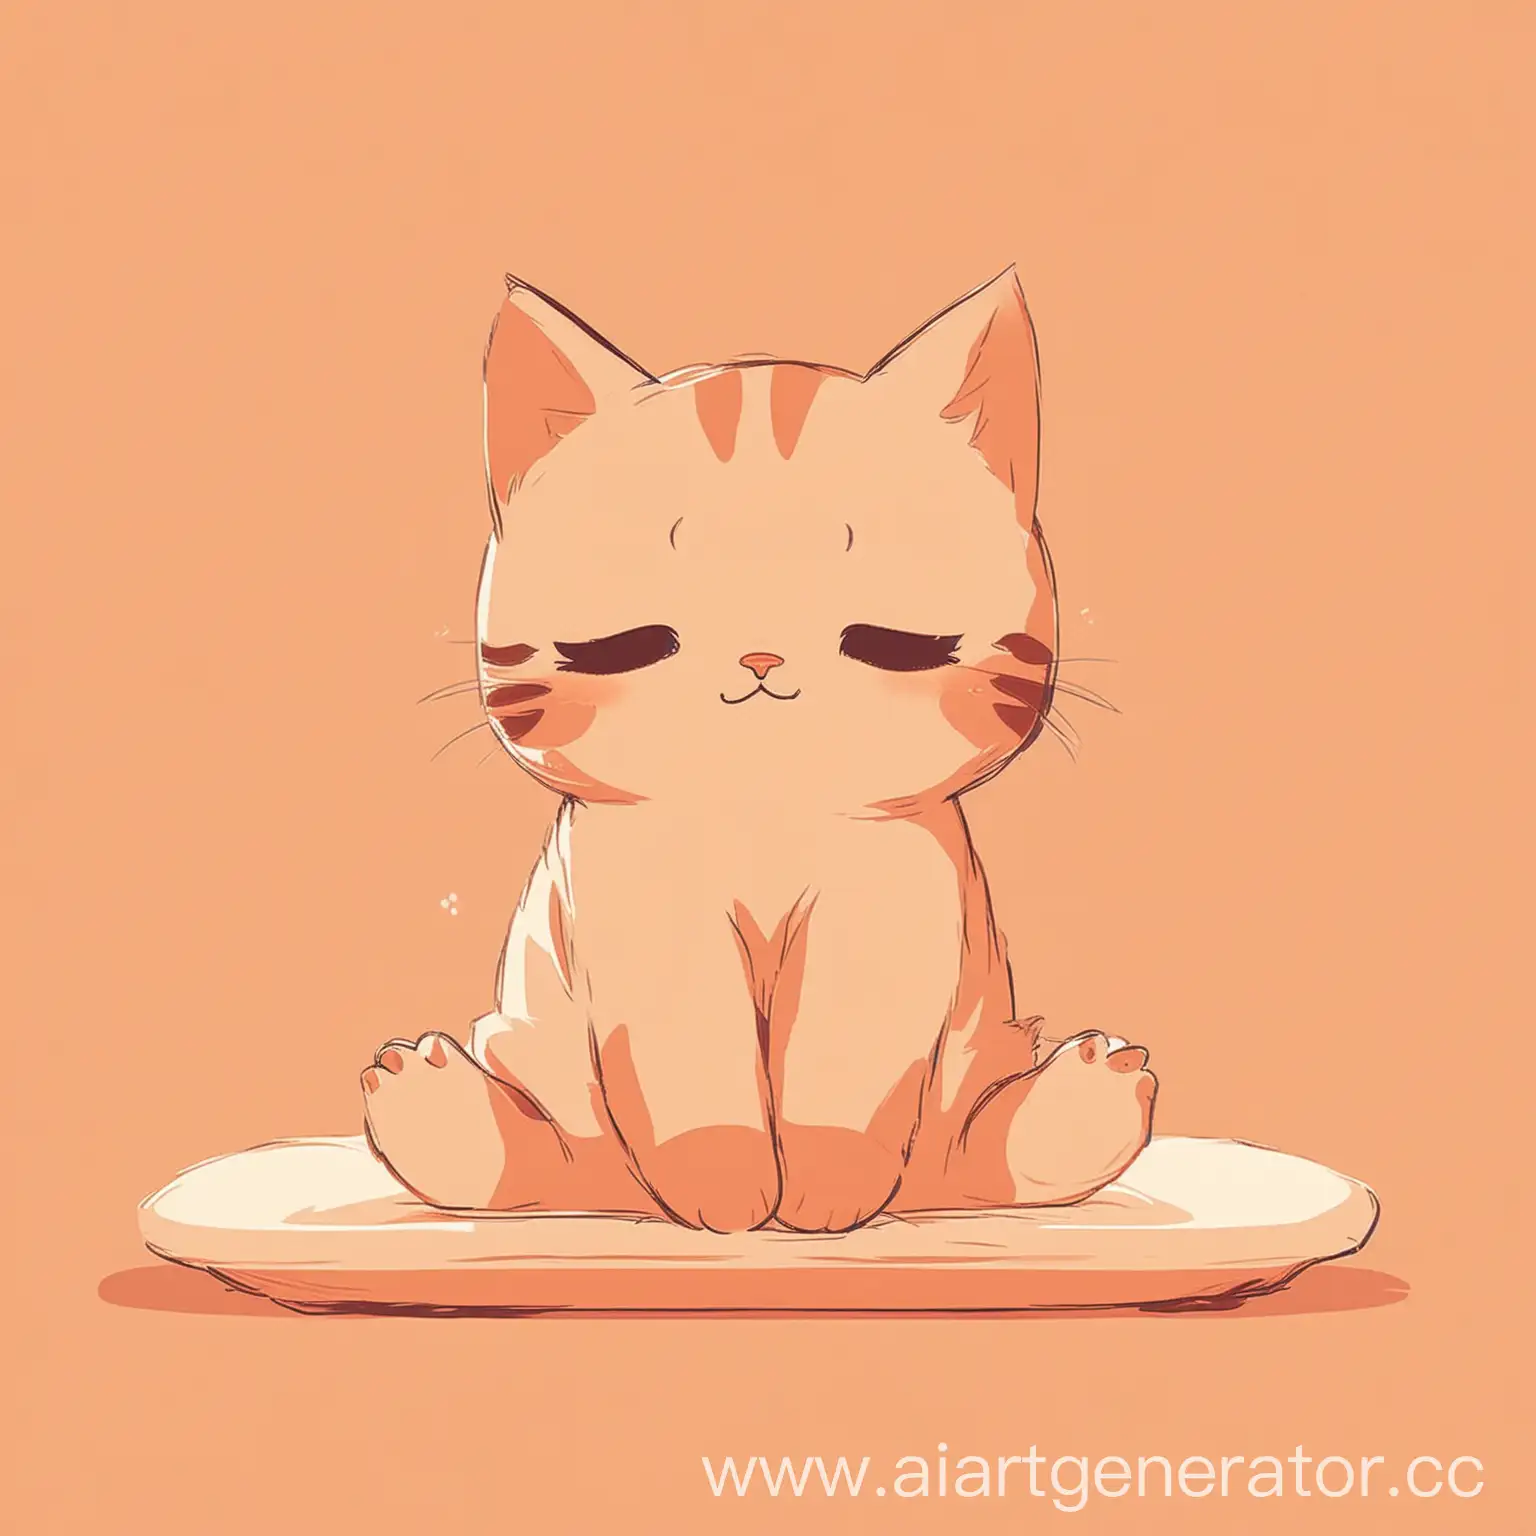 минималистический котик делает массаж, аниме, тёплый цвет

